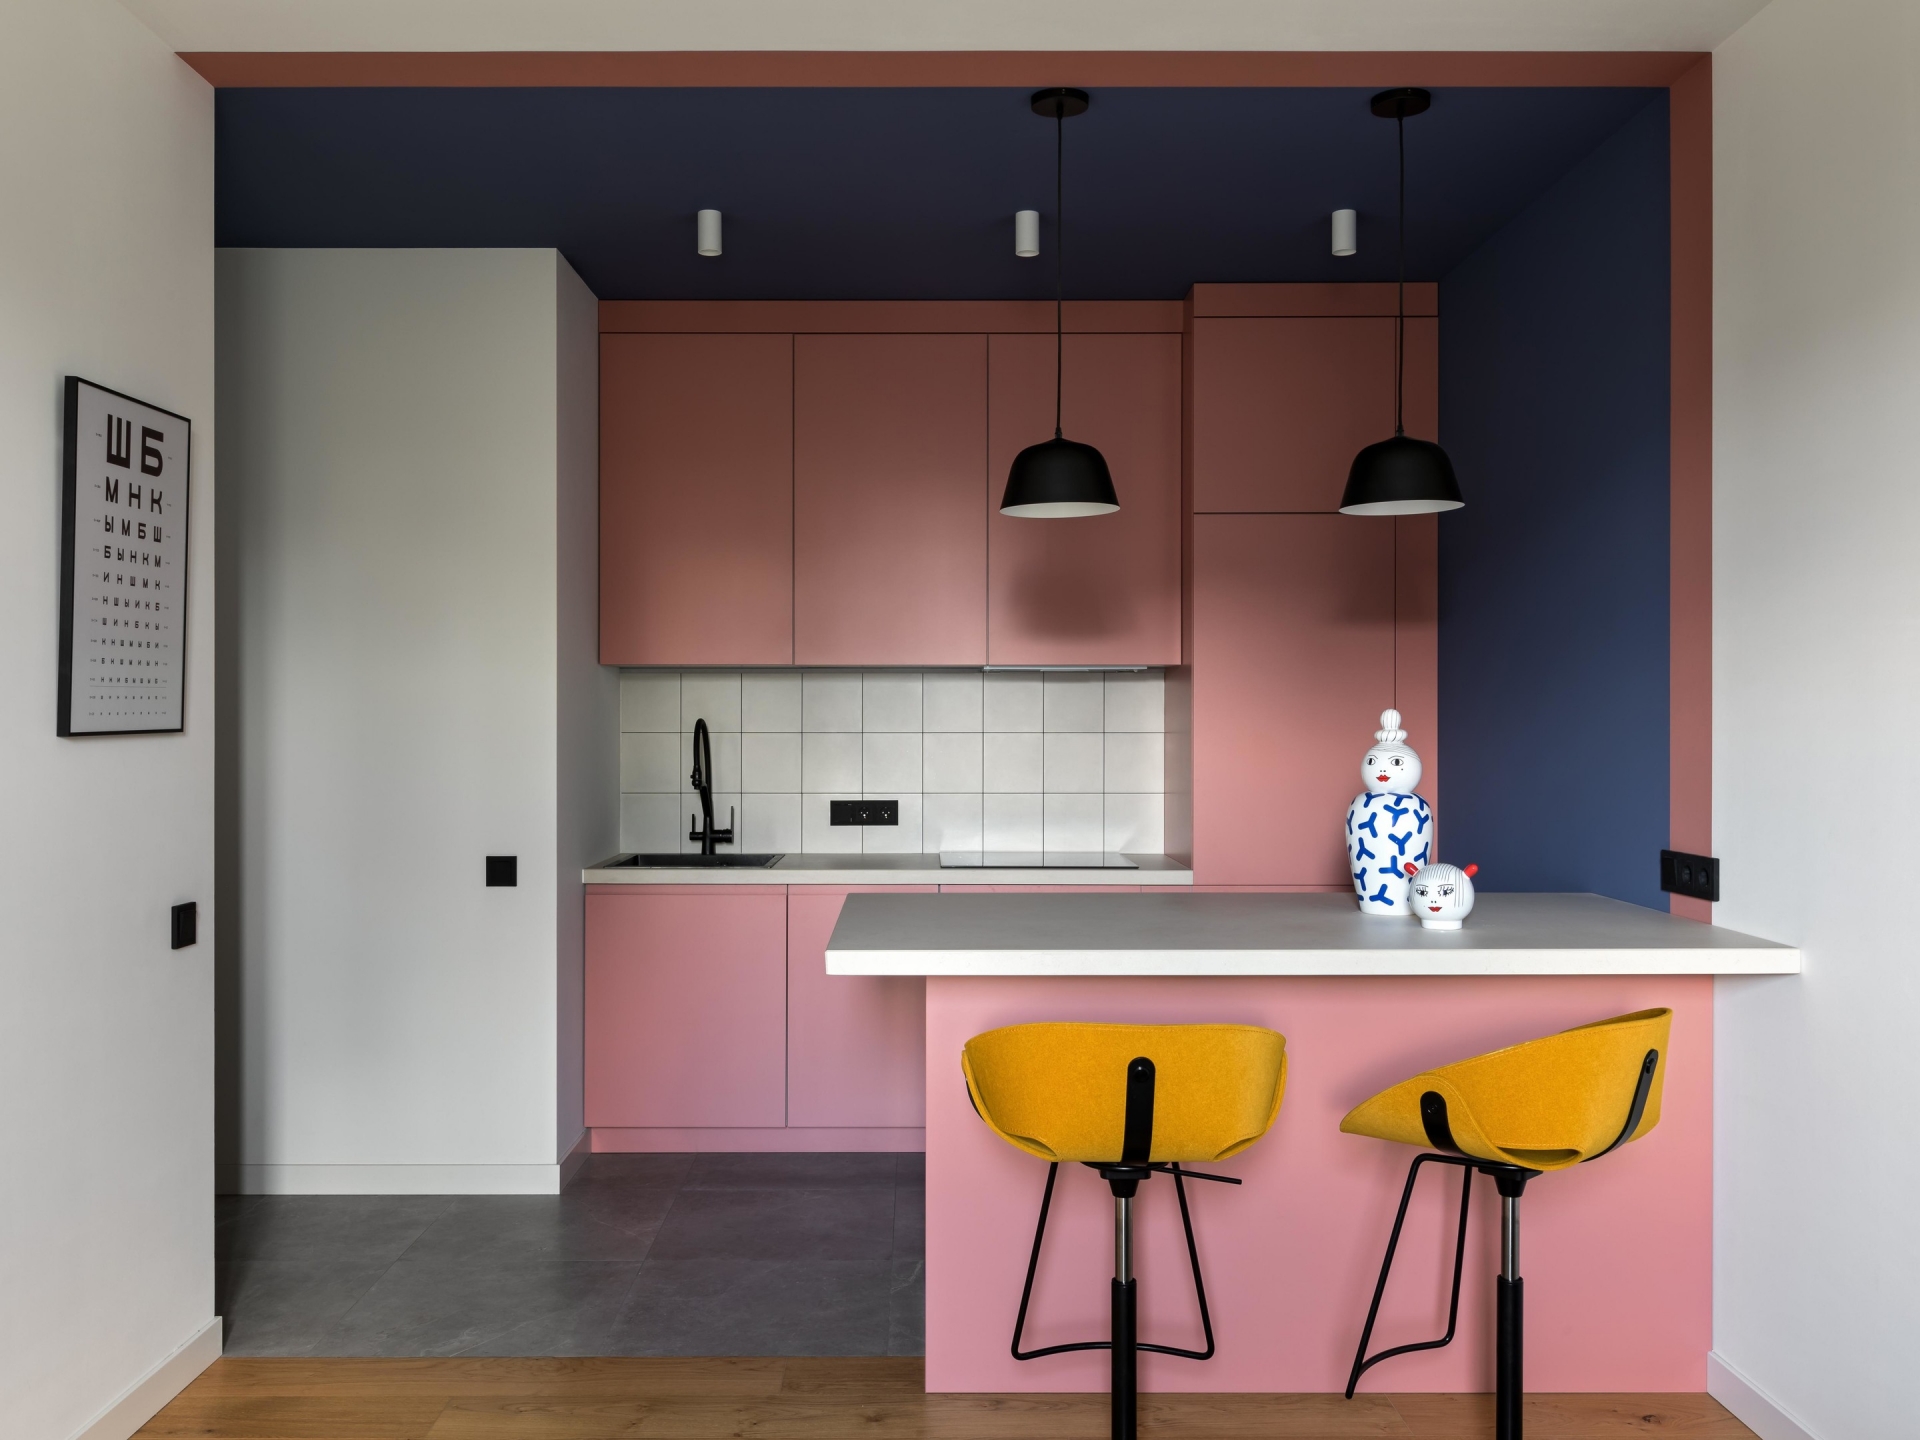 Phòng bếp và khu vực ăn uống thiết kế tối giản với hệ thống tủ lưu trữ và bàn ăn màu hồng phấn, xung quanh được bao bọc bởi bức tường xanh lam đậm. Ngoài ra còn bổ sung 2 chiếc ghế màu vàng mù tạt bắt mắt.